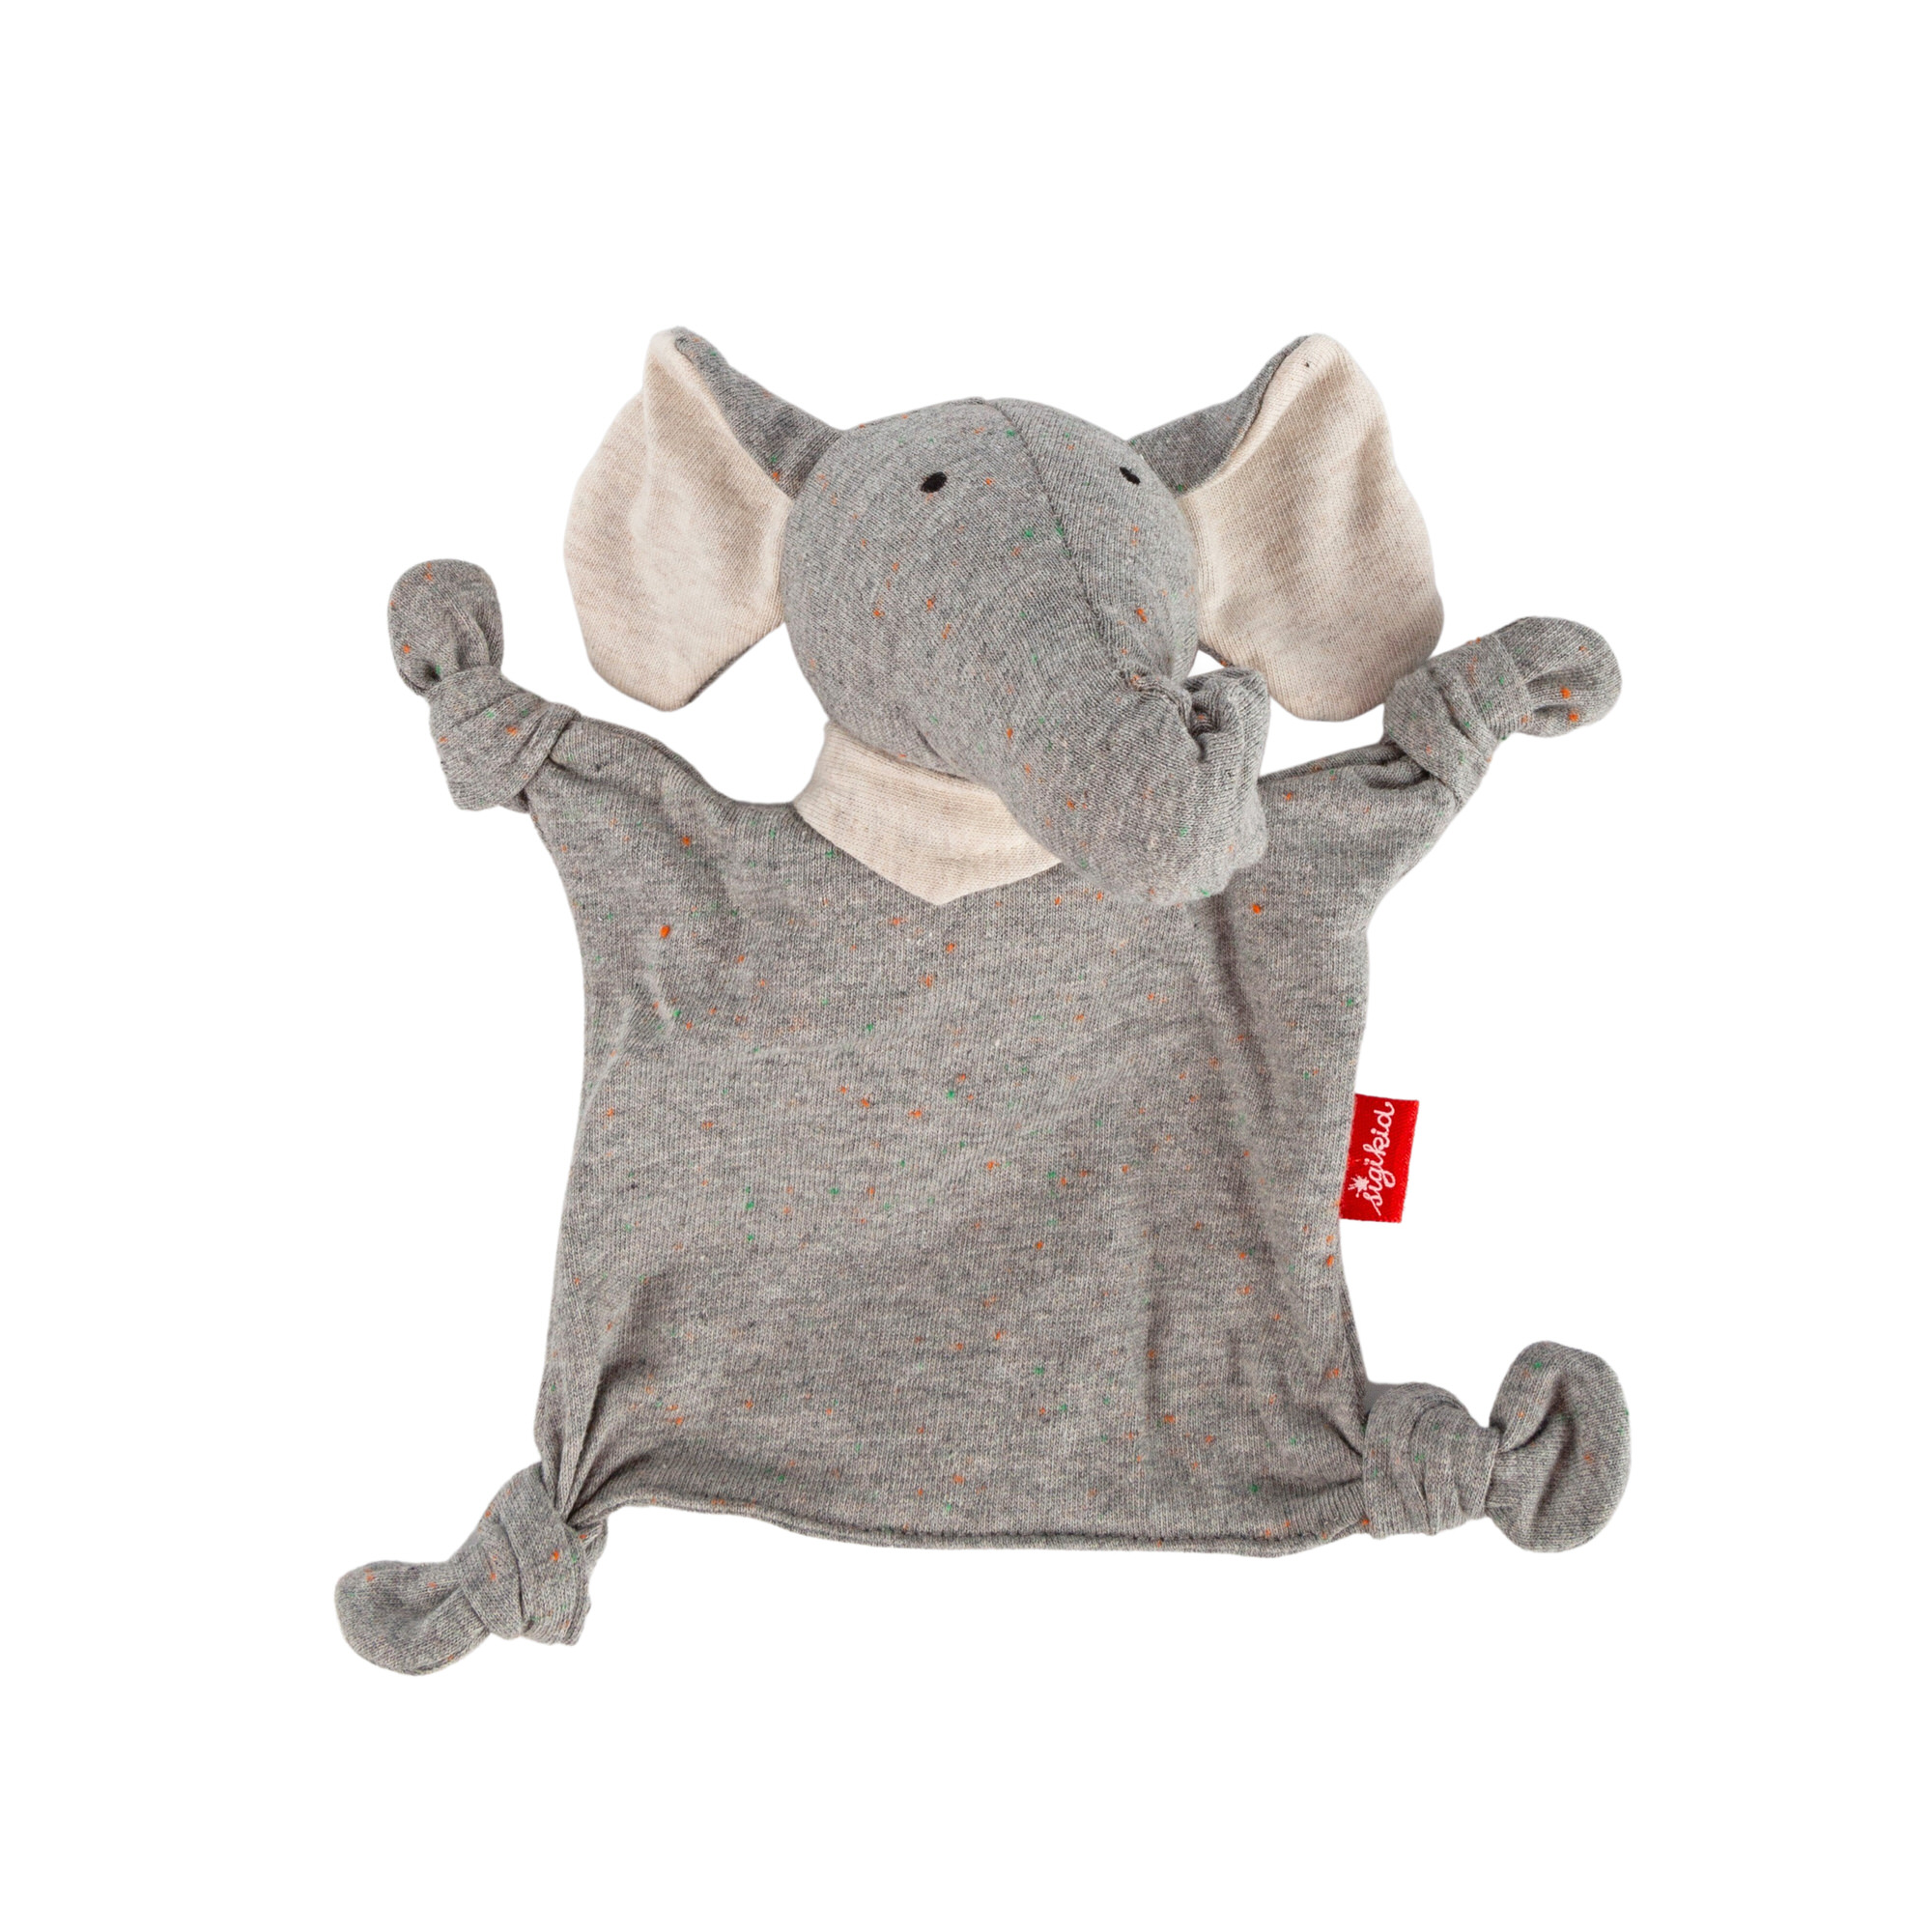 Baby lovey elephant, grey, small